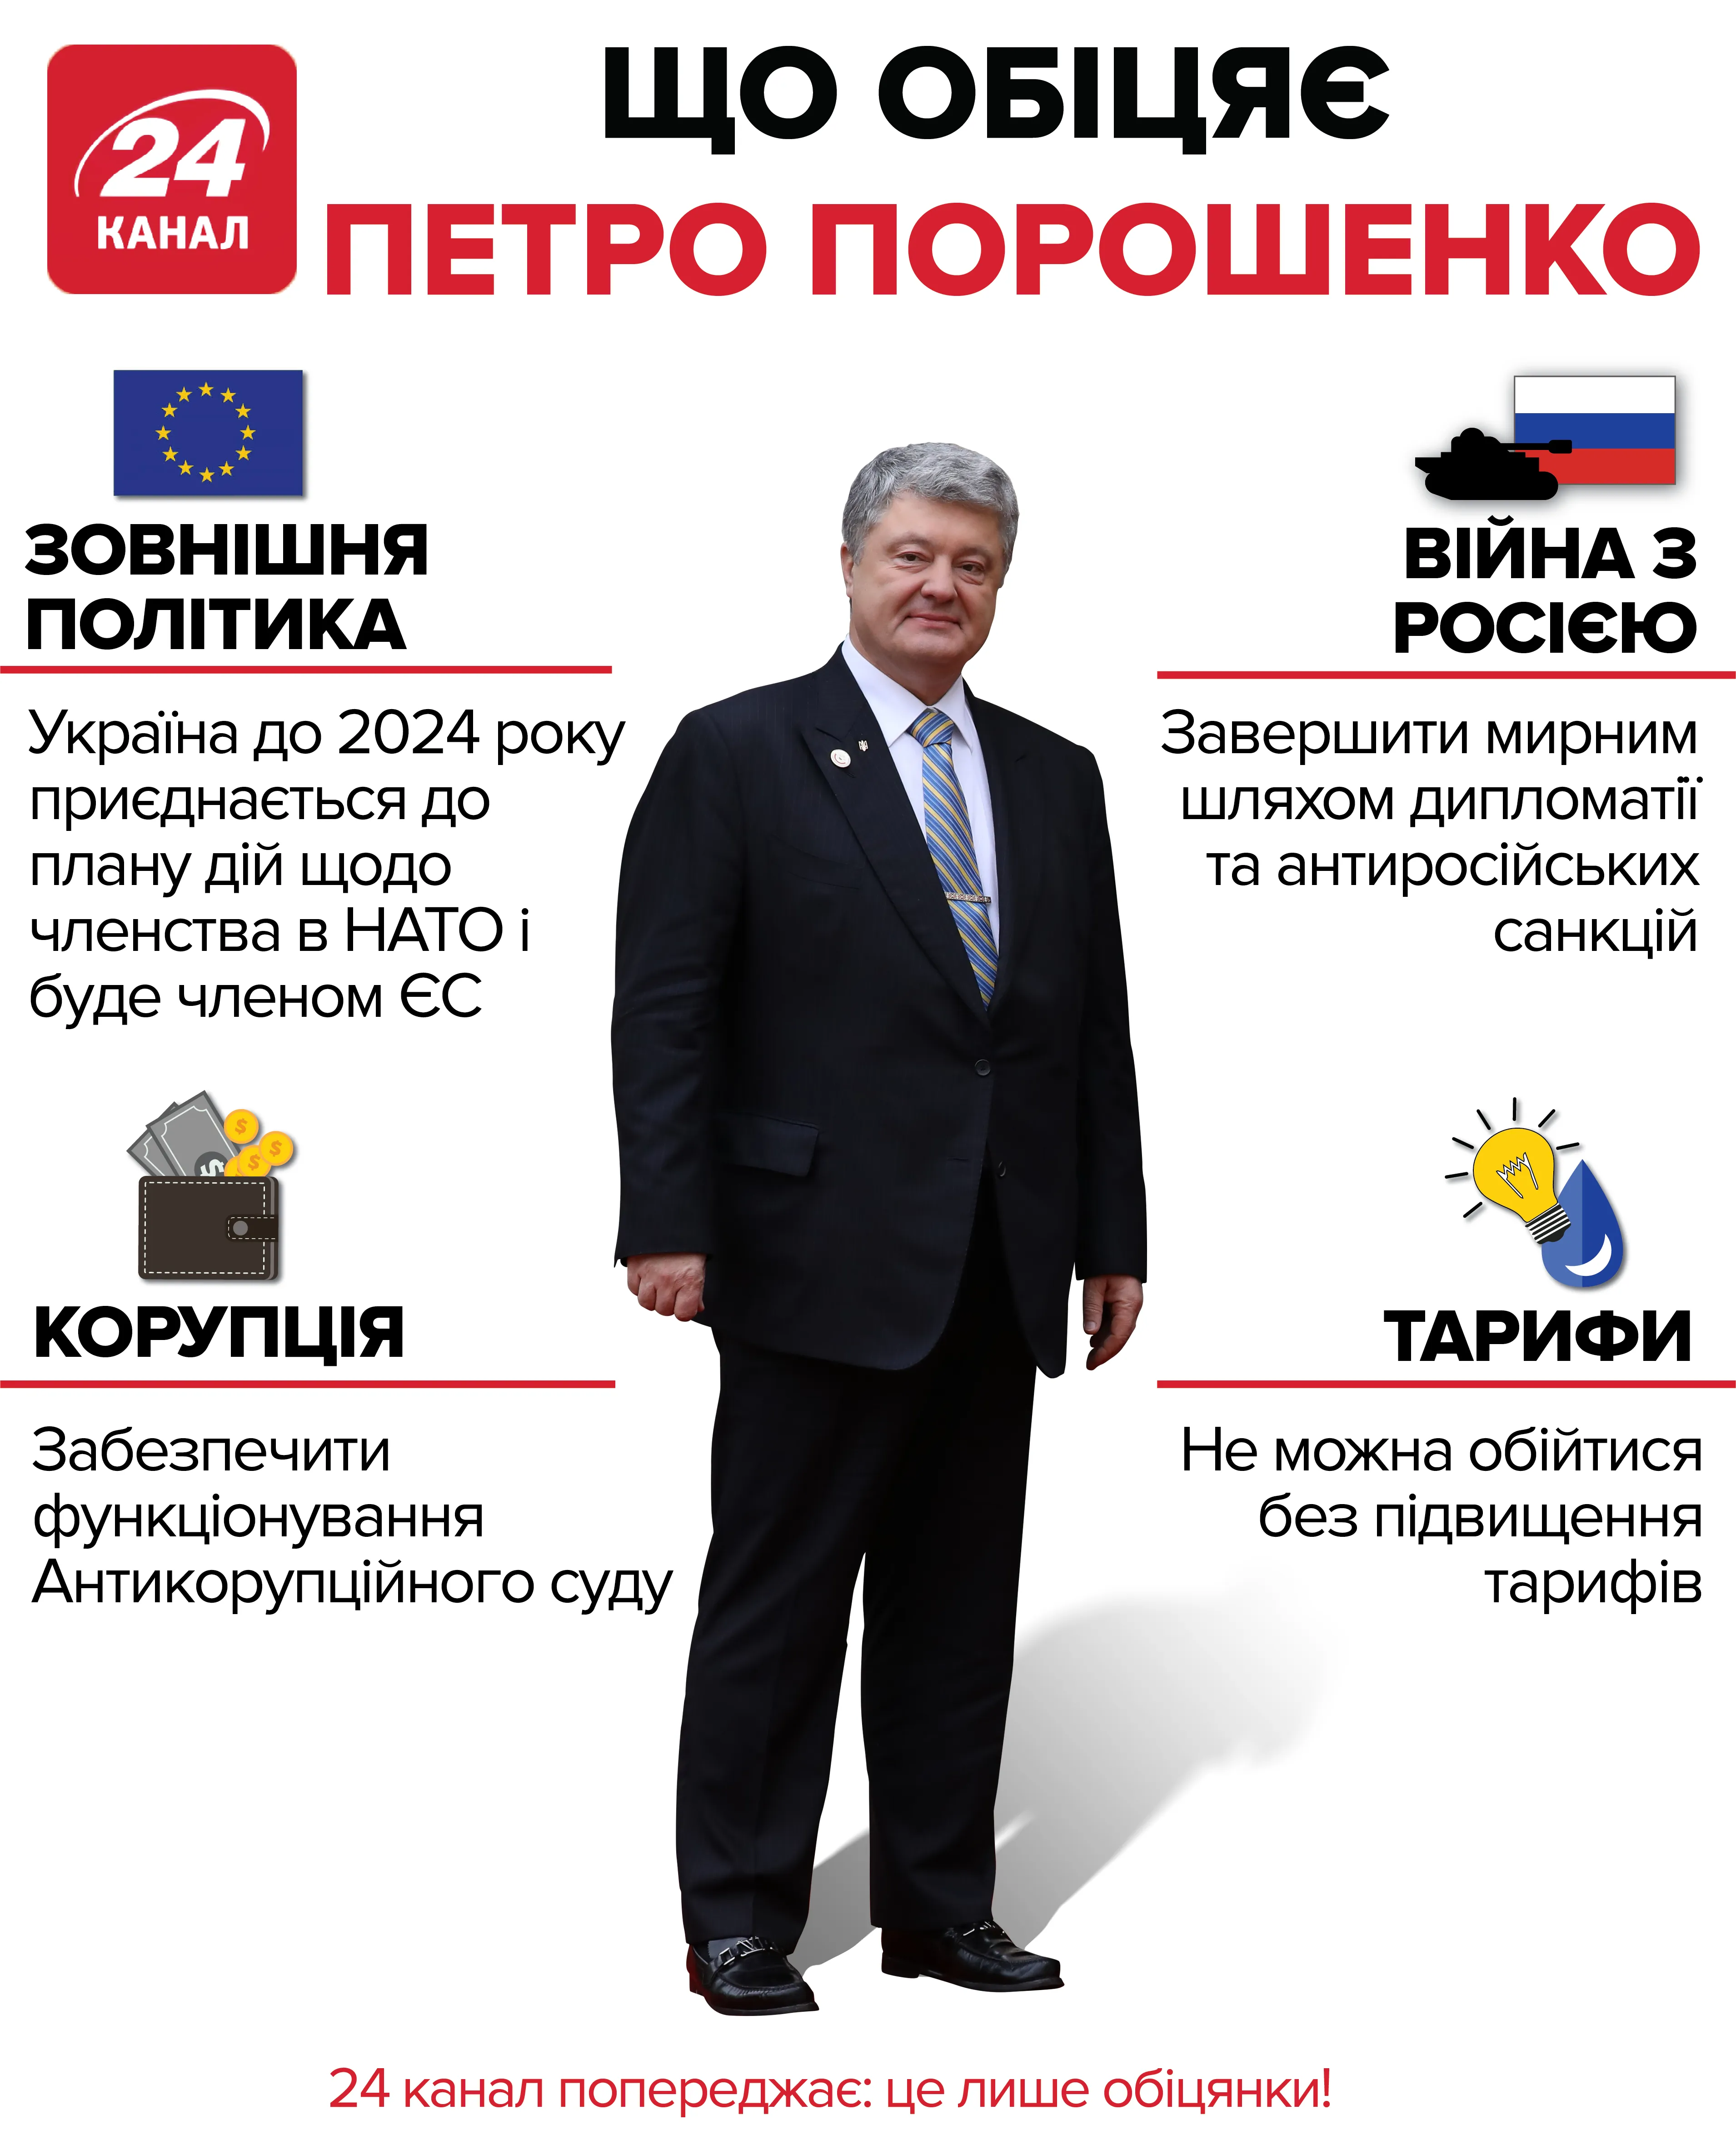 Що обіцяє кандидат у президенти Петро Порошенко